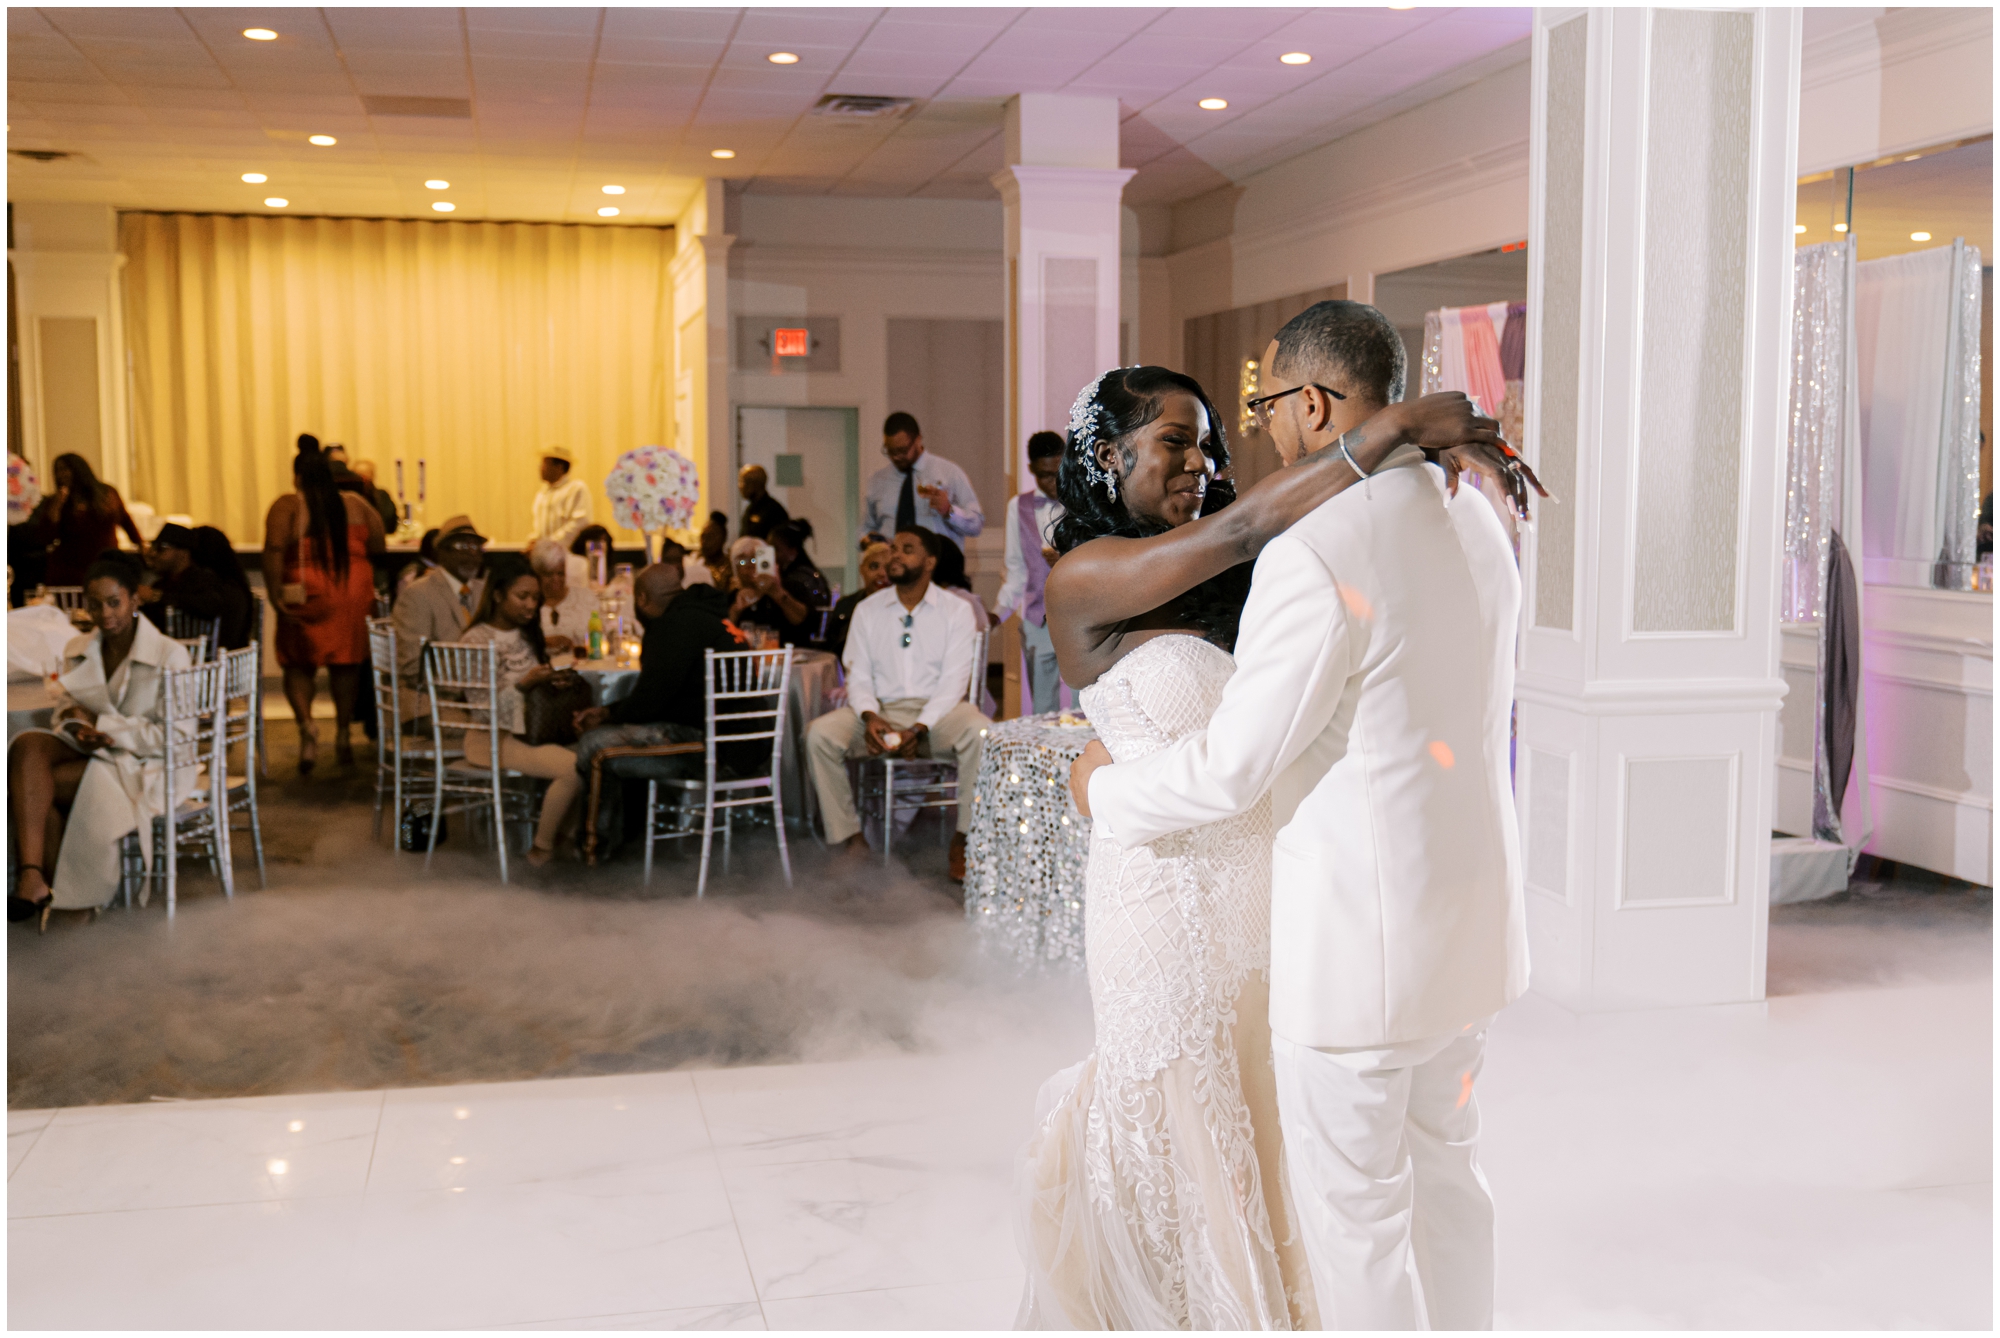 First Dance between bride and groom